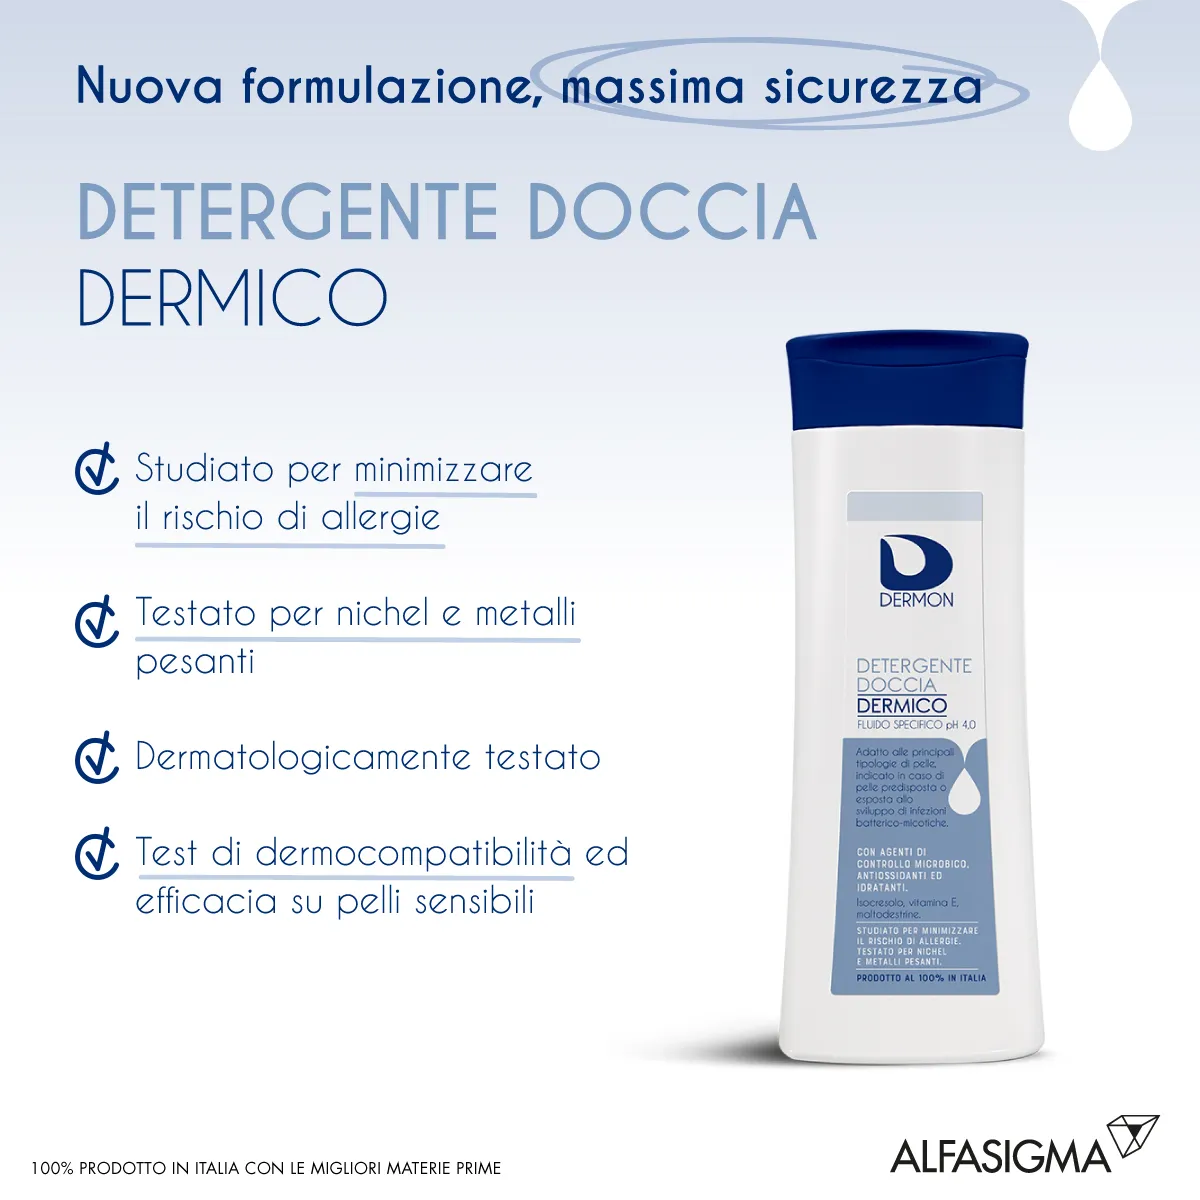 Dermon Detergente Doccia Dermico per Infezioni Microbiche 250 ml 